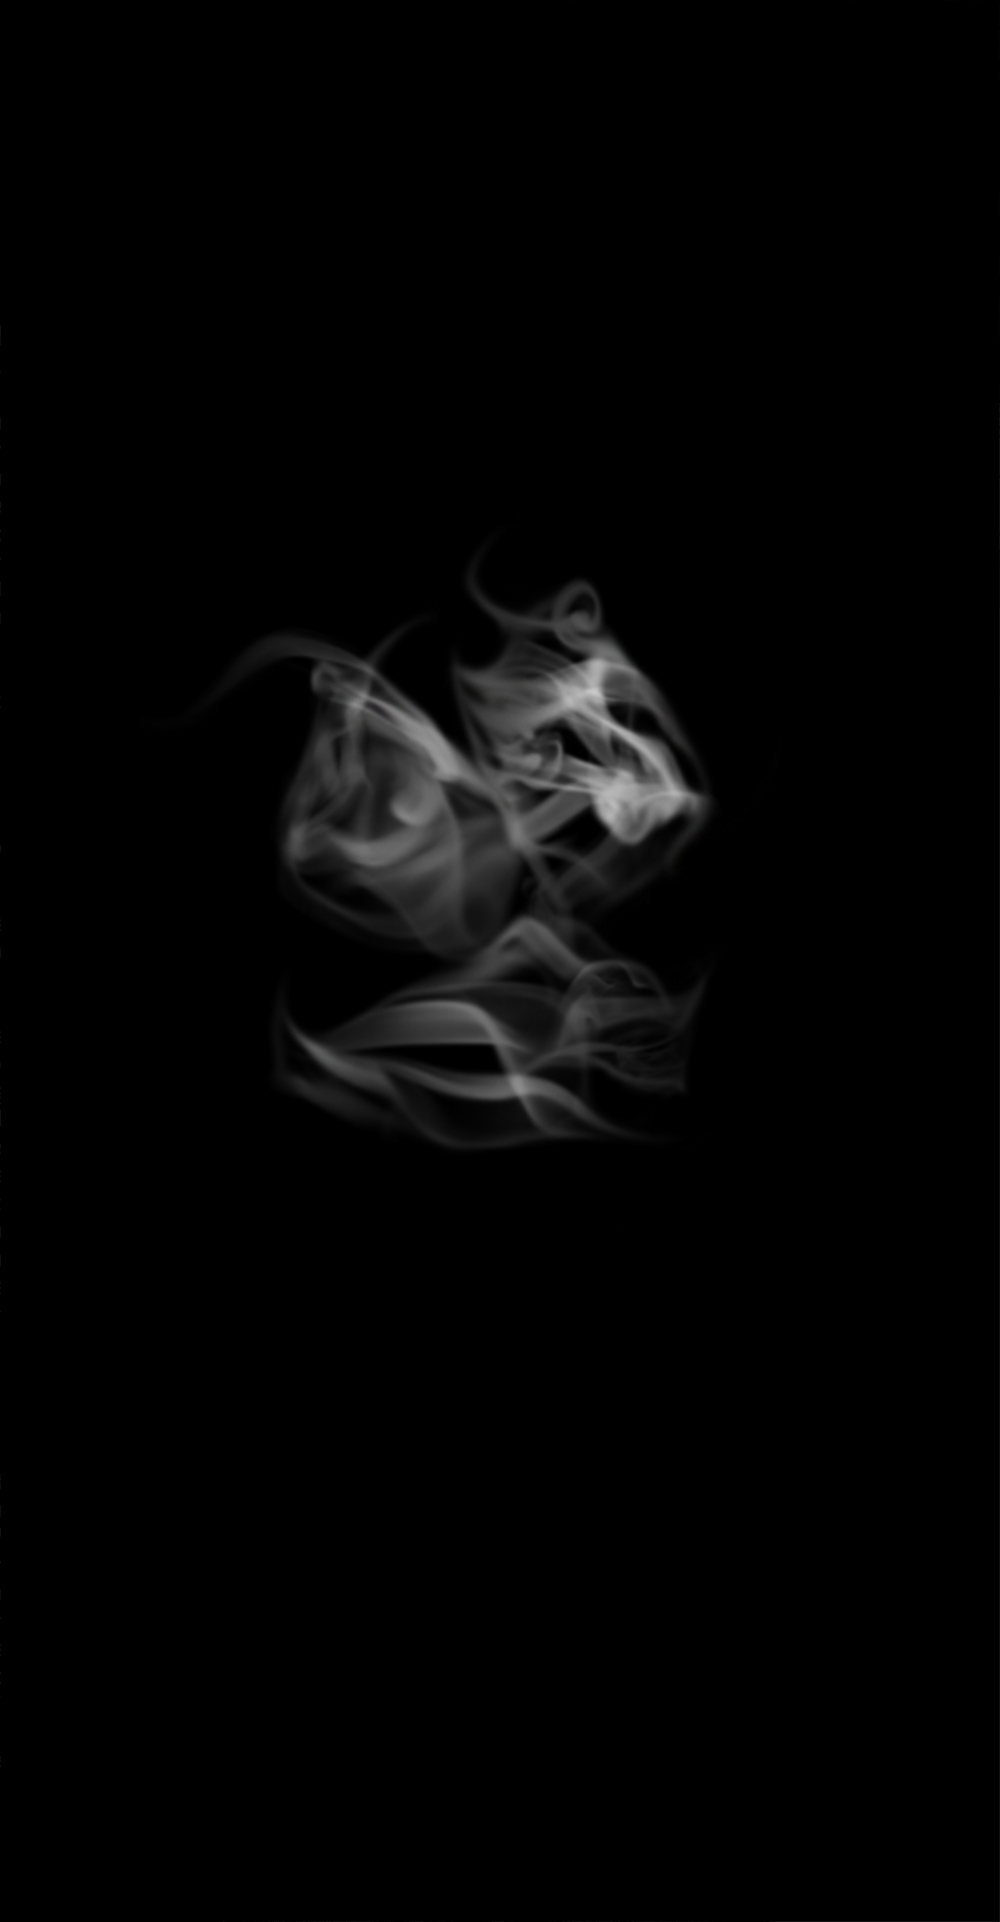 smoke black and white balance charles andrew seaton charlesandrewseaton